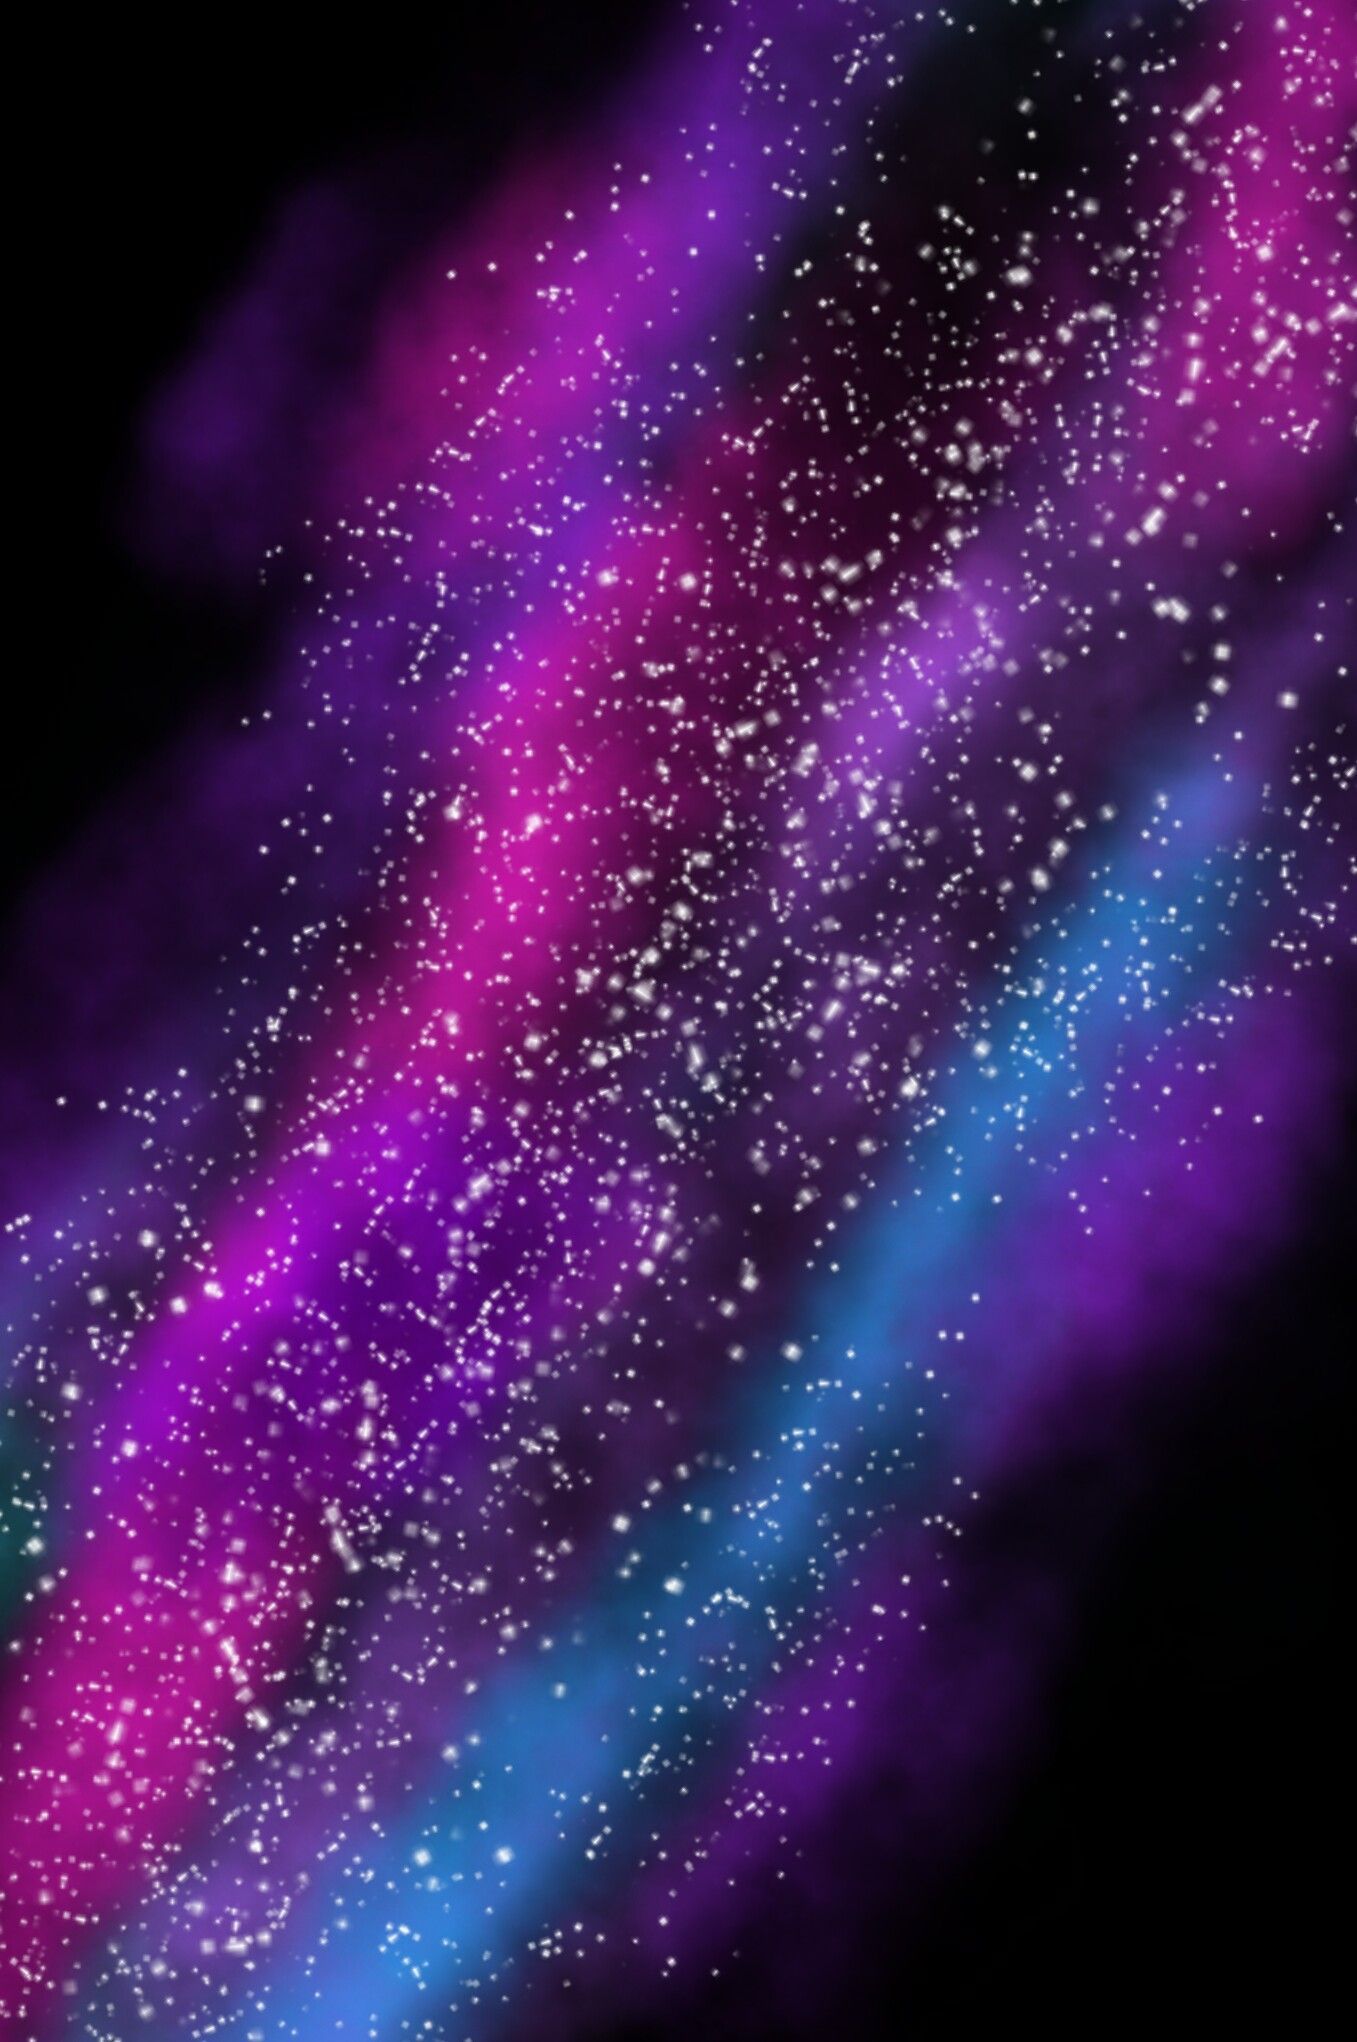 Galaxy wallpaper #galaxy #art #wallpaper #iphone #handmade